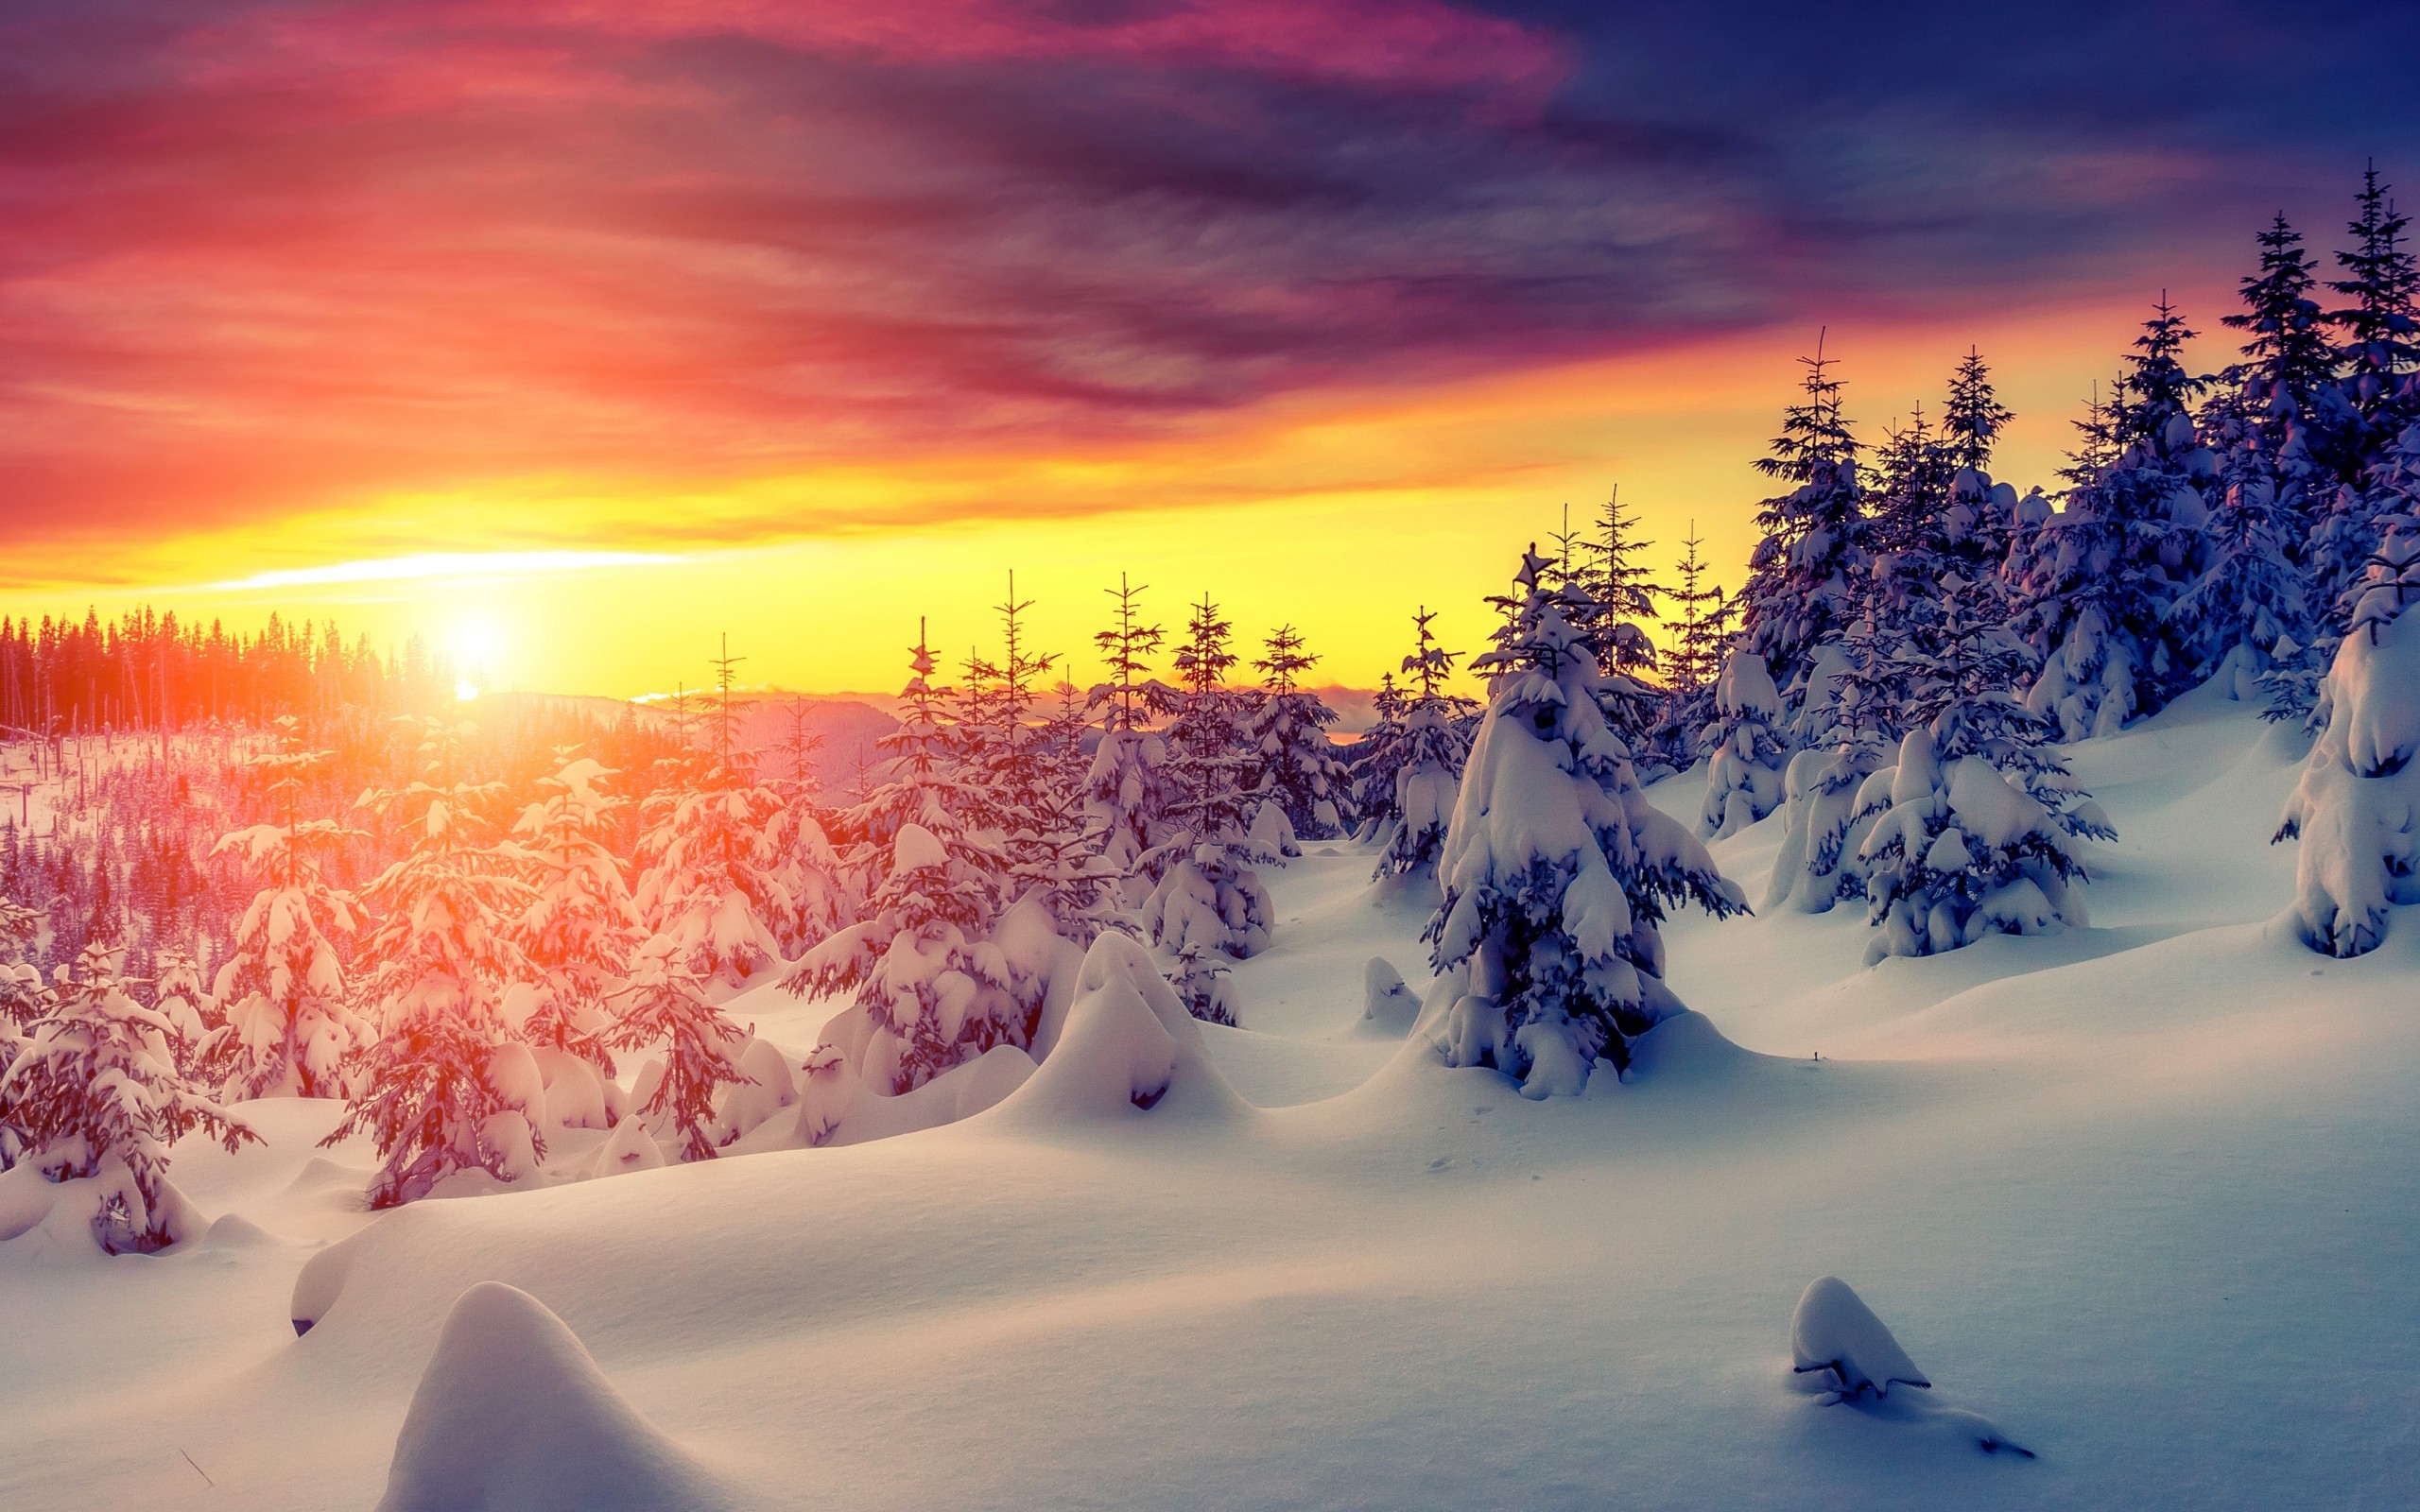 Mùa đông, tuyết, tải ảnh nền 4K - Hãy tải ảnh nền 4K kỳ diệu về mùa đông và cảm nhận những giá trị vô giá mà nó mang lại. Hình ảnh tuyết rơi trắng xóa sẽ mang đến cho bạn sự yên bình và thanh tịnh. Hãy cảm nhận những tia nắng chỉnhuấn xuyên qua cây cối nơi rừng tuyết để khám phá thế giới đầy thú vị của mùa đông.